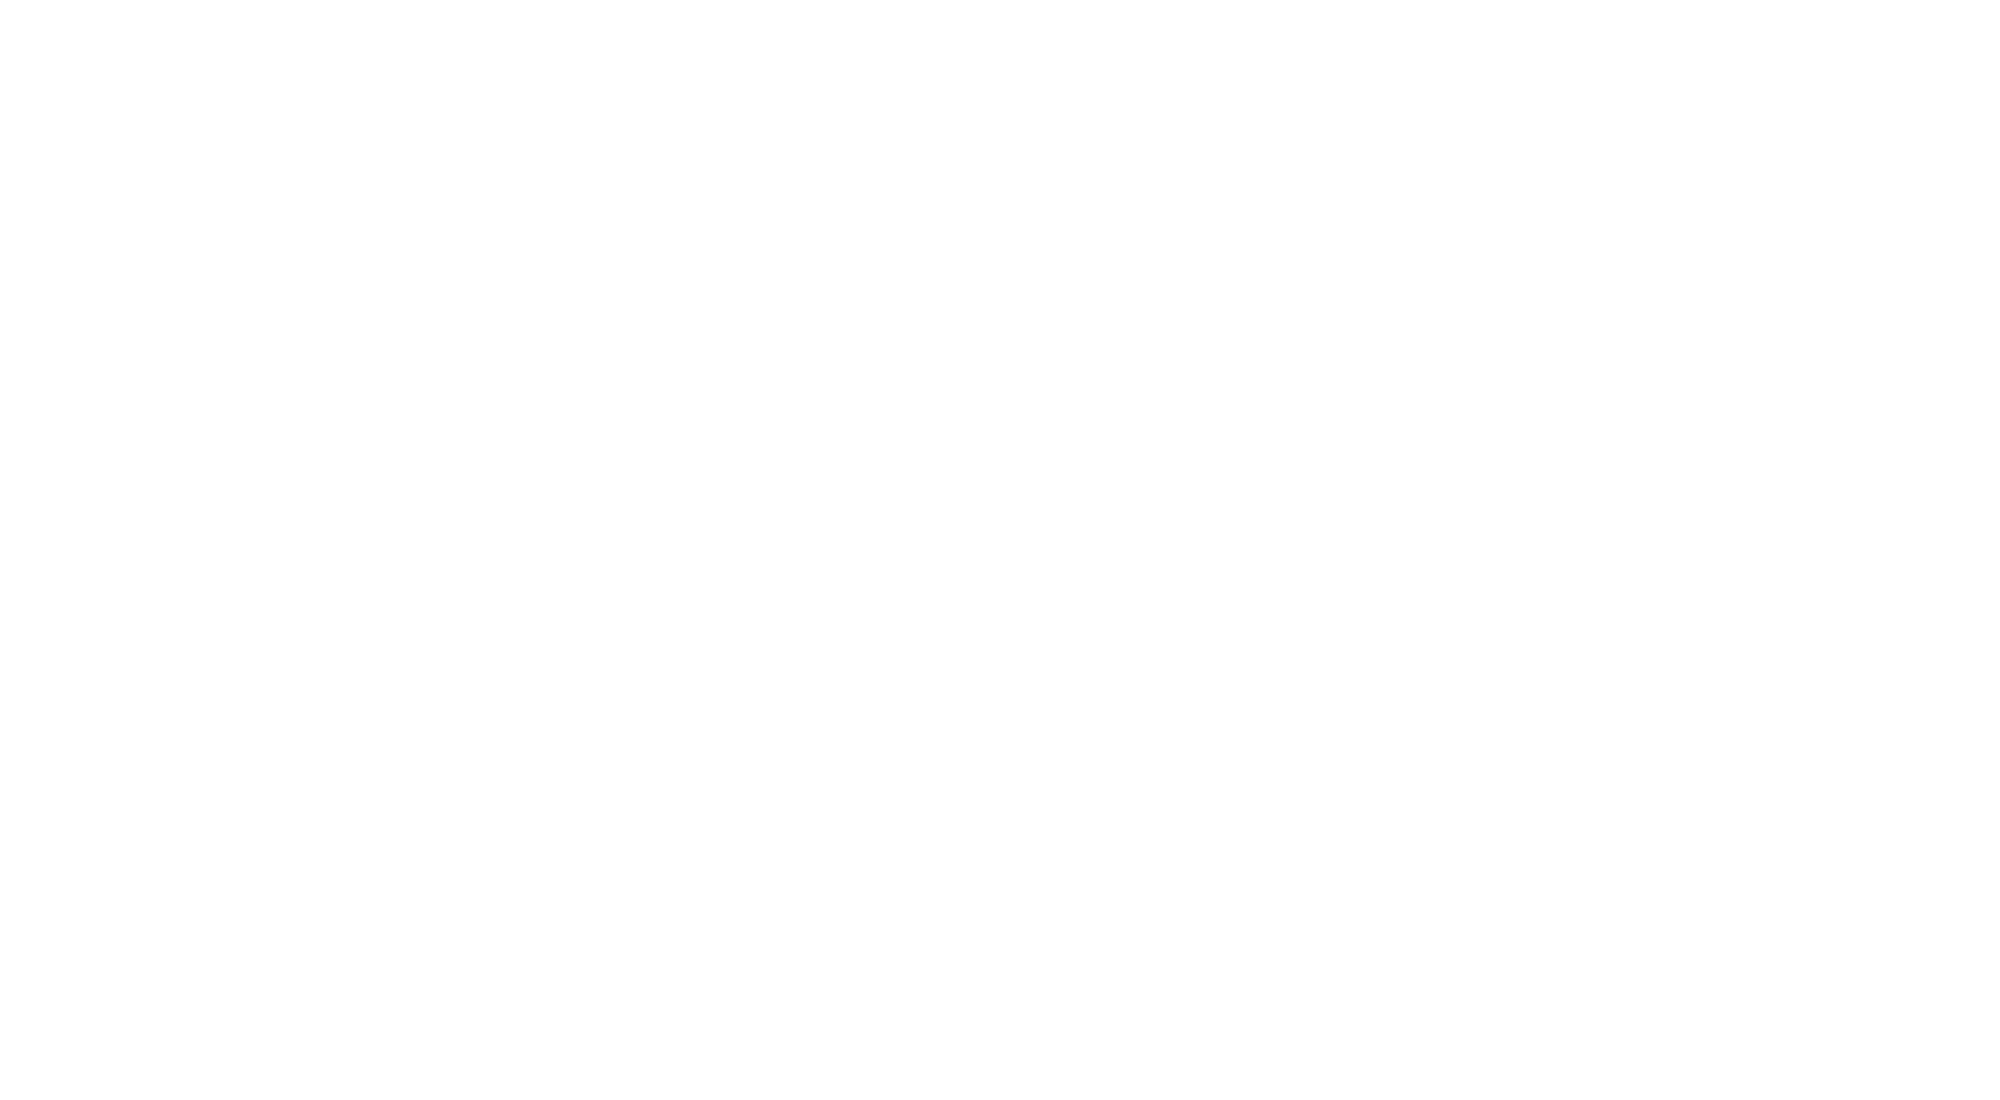 Woody Witt